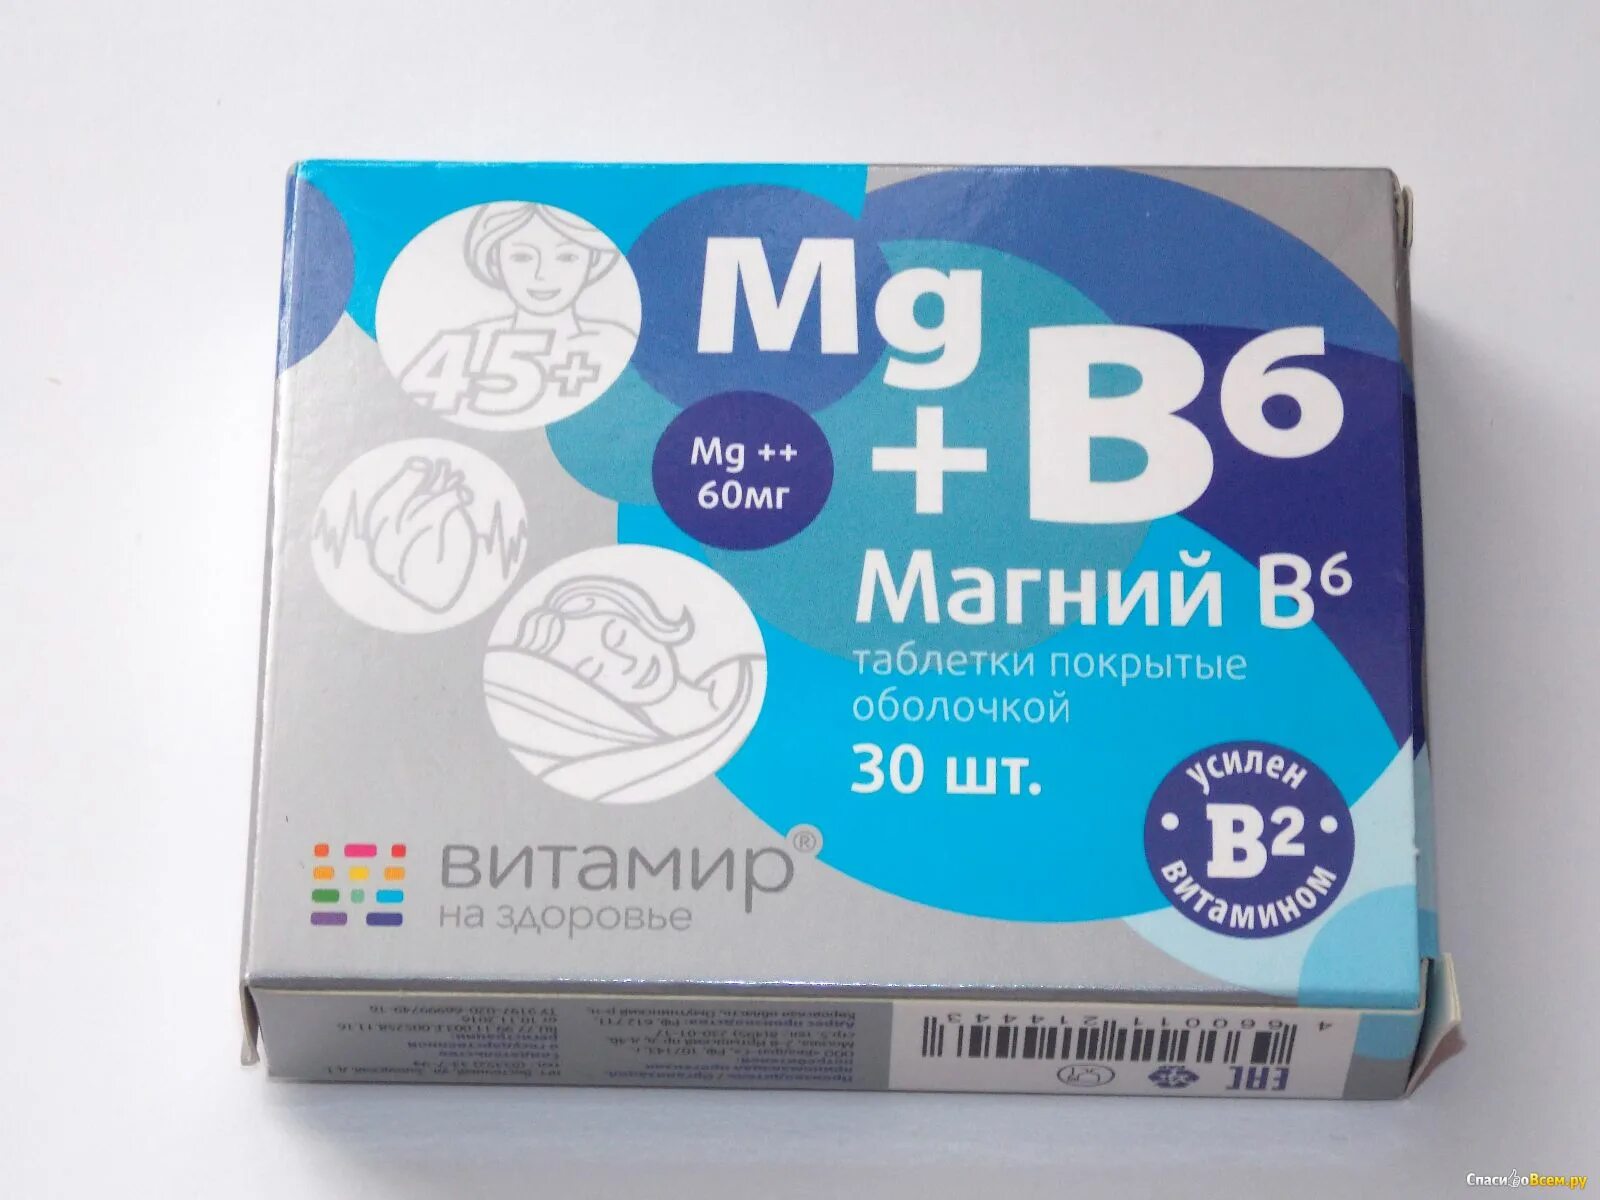 Магний в6 форма. Магний б6 синий. Магний б6 б12. БАД MG b6. Магний б6 саше.